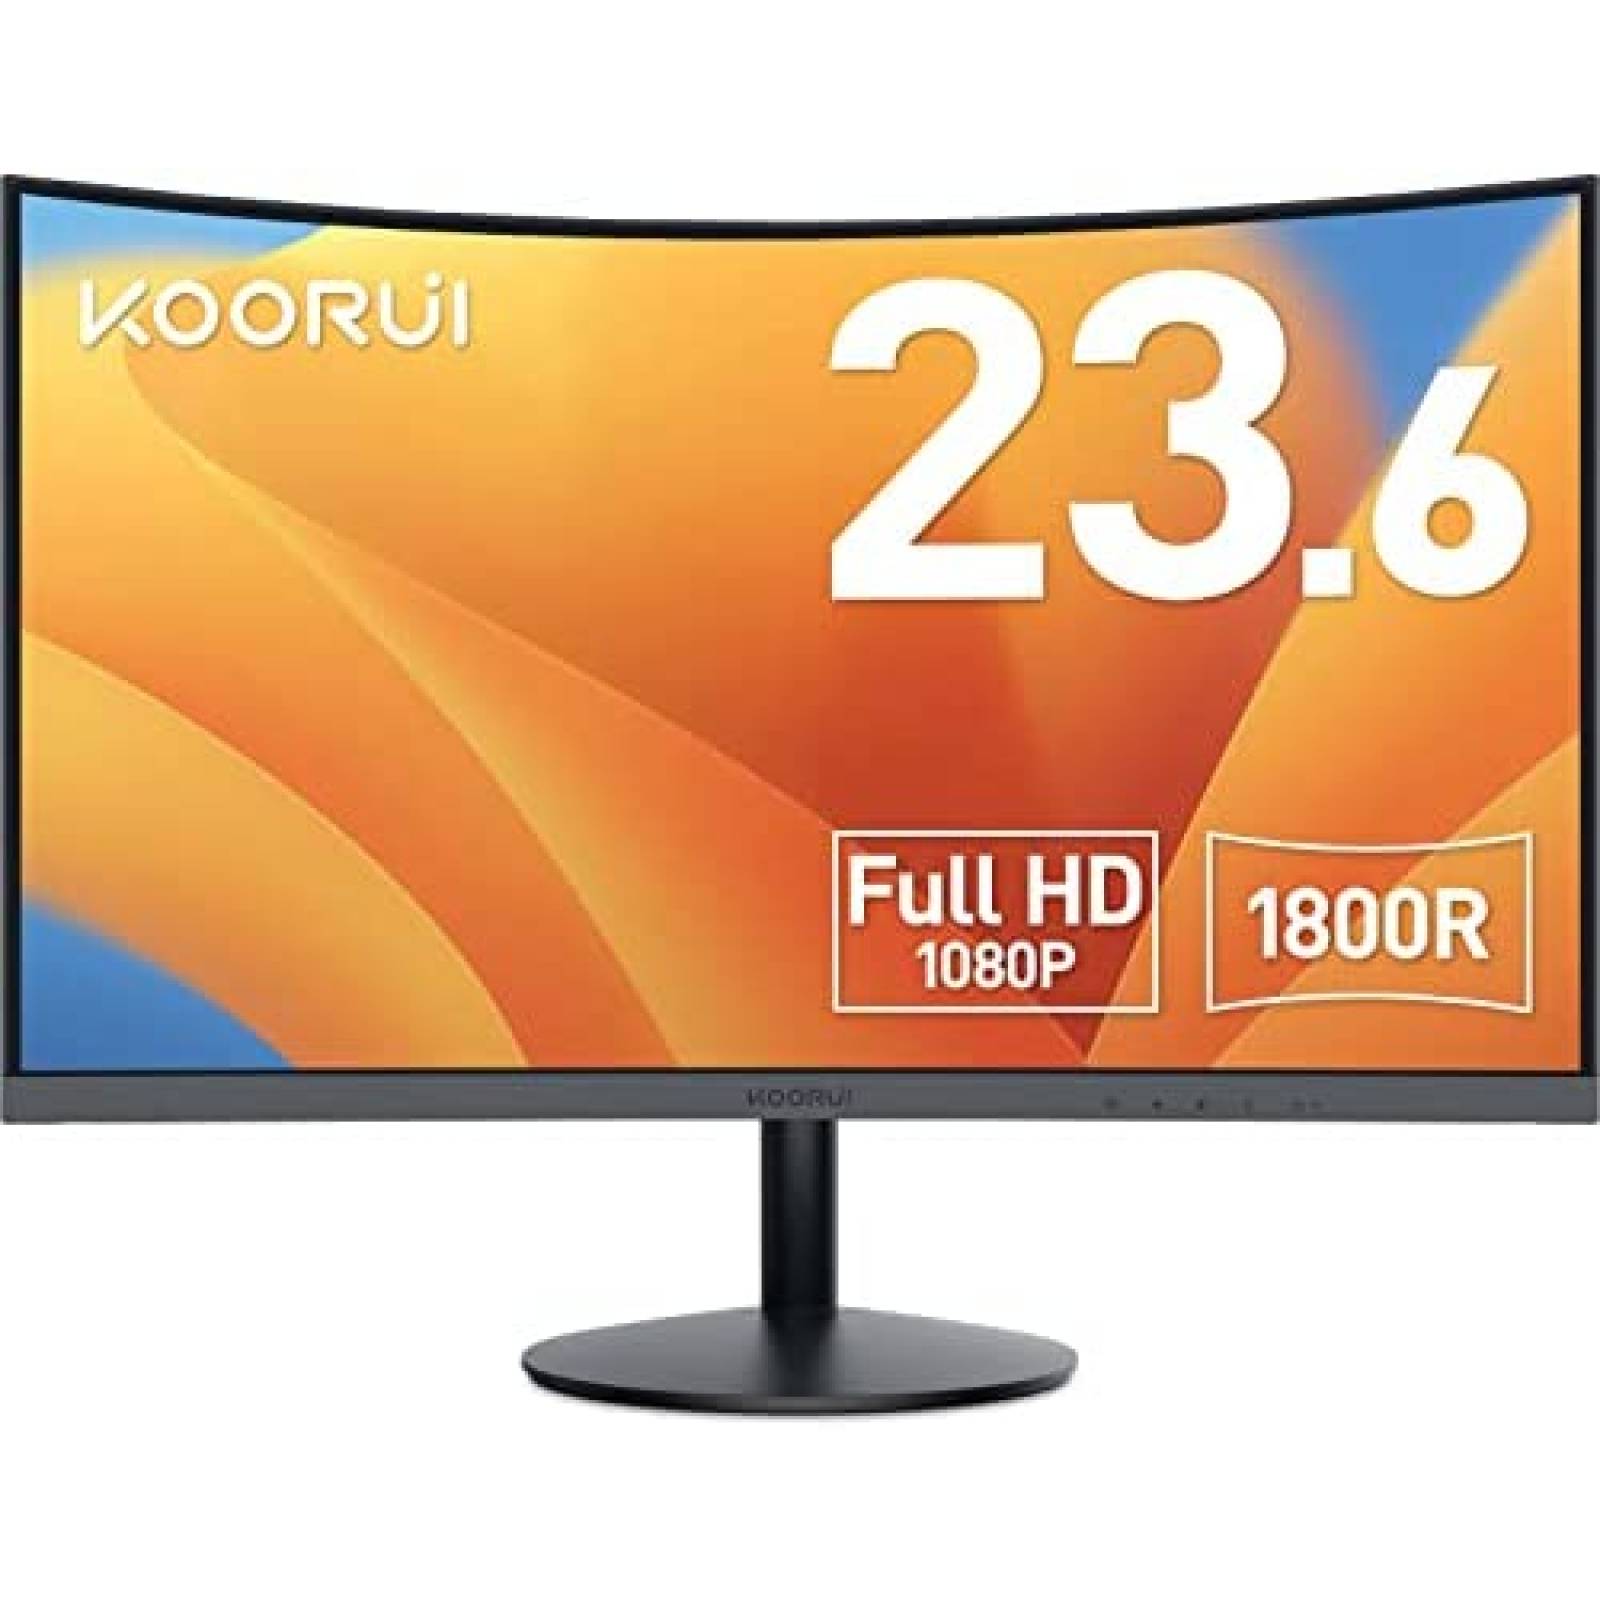 KOORUI Monitor Curvo - 23,6 Pulgadas Full HD (1920 x 1080 a 60 Hz, VA, 5